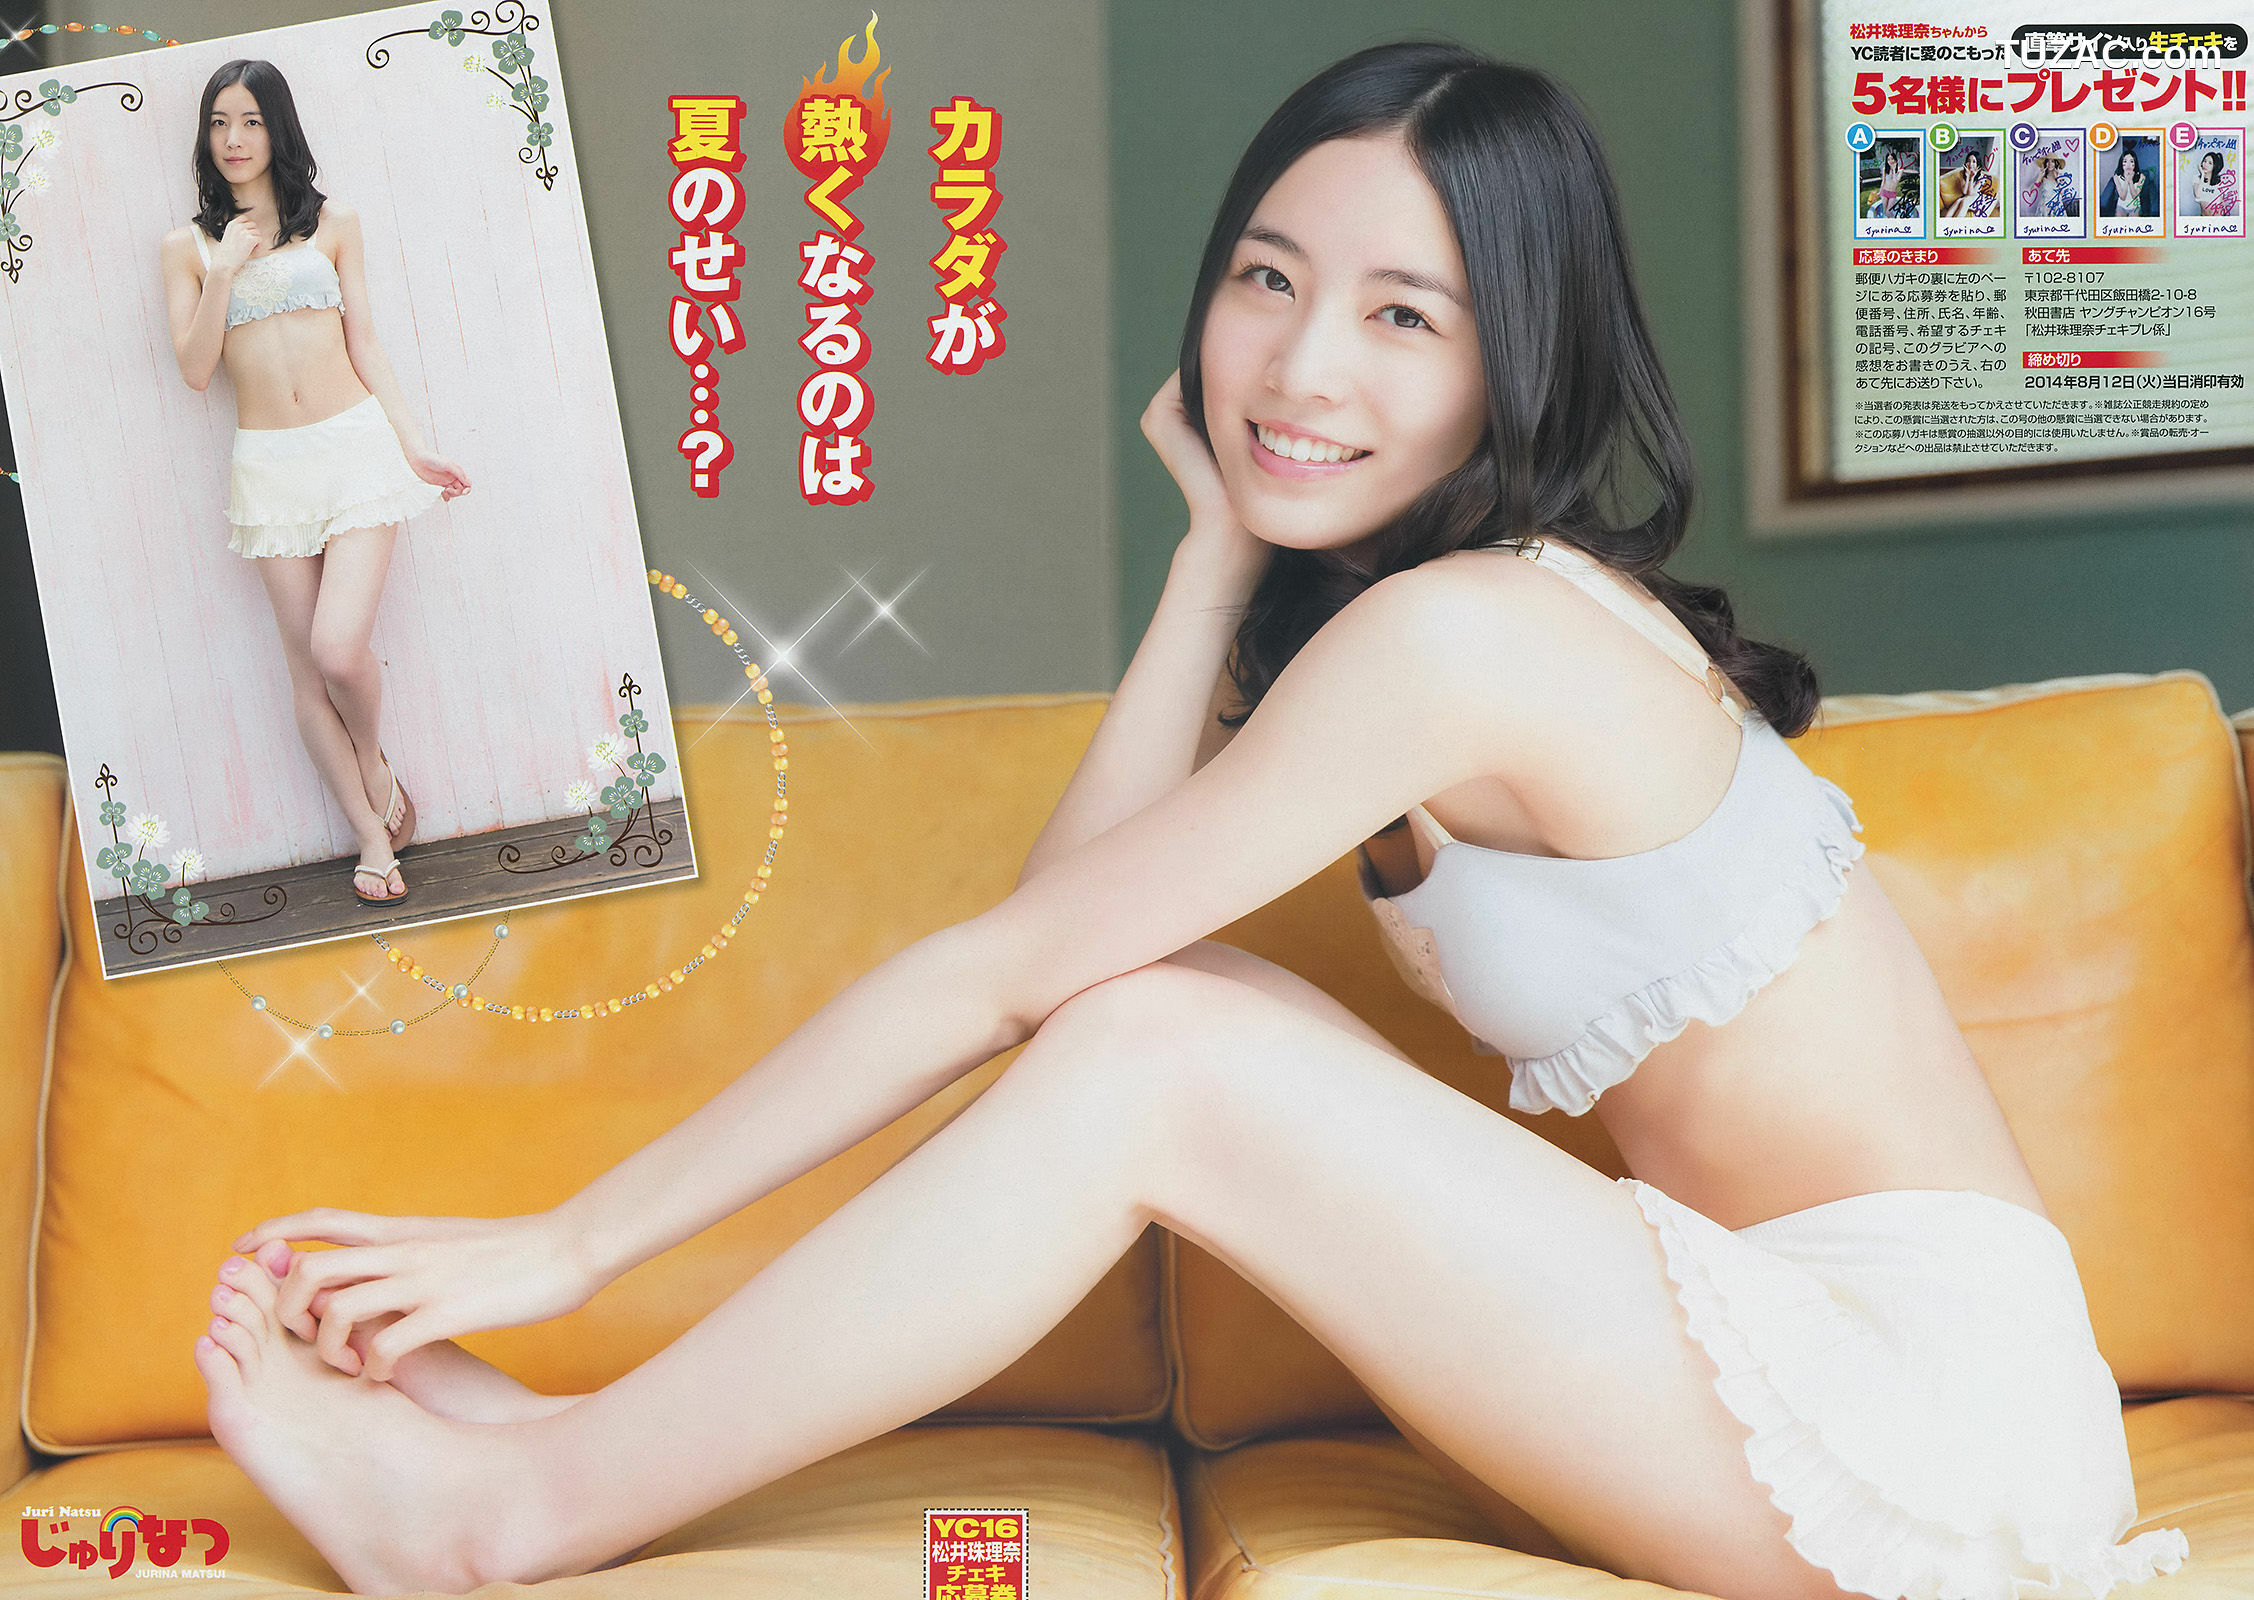 Young Champion杂志写真_ 松井珠理奈 虎南有香 2014年No.16 写真杂志[15P]